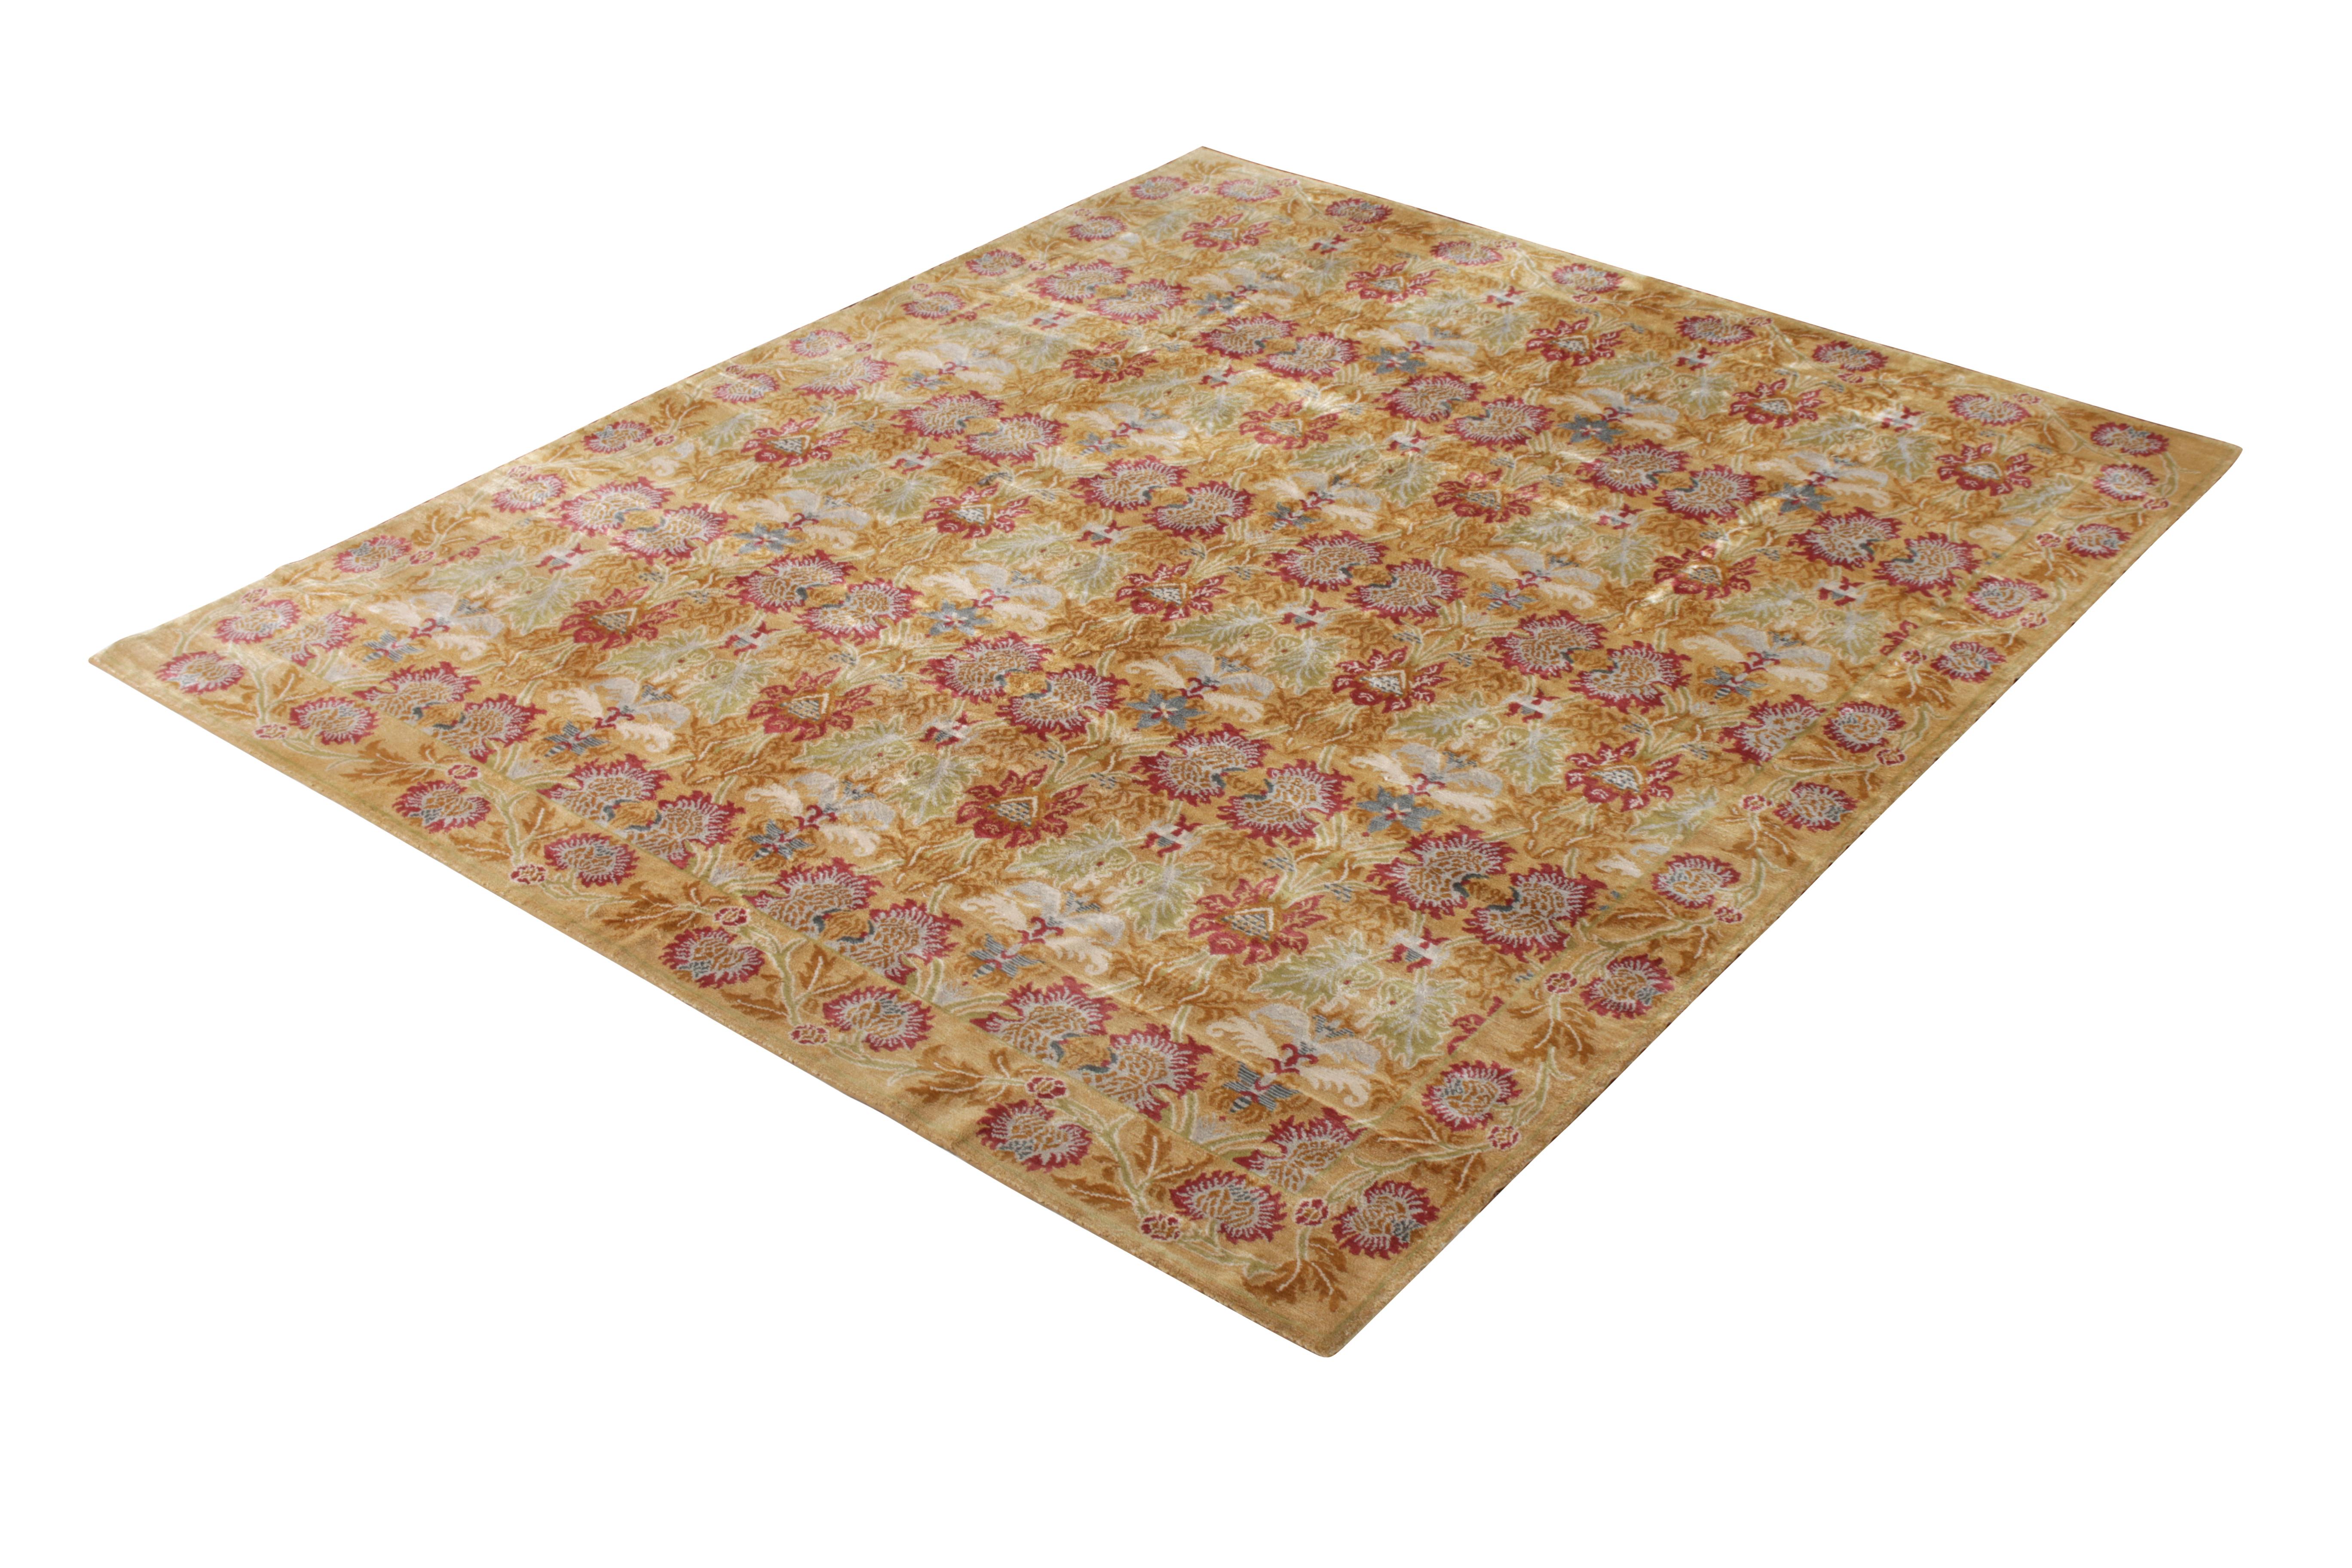 Dieser handgeknüpfte Seidenteppich im Format 8 x 10 ist eine Ergänzung der europäischen Teppichkollektion von Rug & Kilim, die liebevoll 